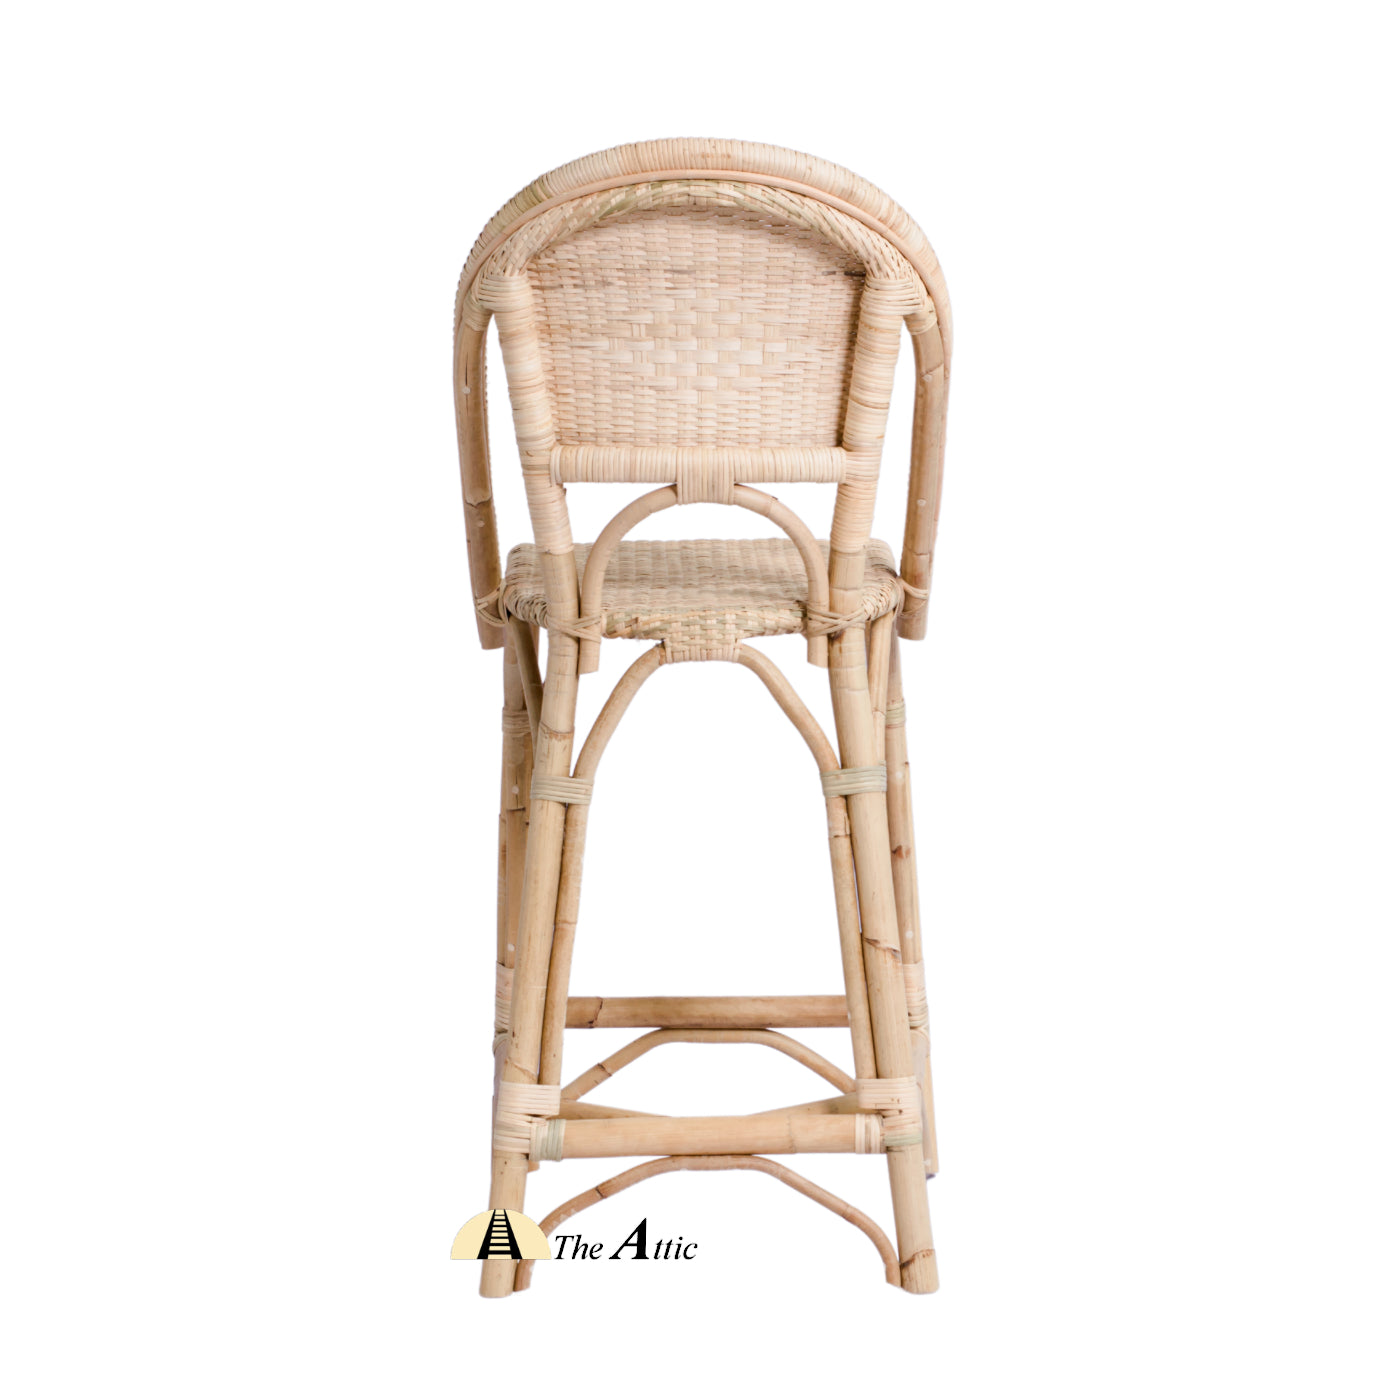 Riviera Rattan Round Bar Counter Chair, Cane Wicker Furniture - theatticdubai.com